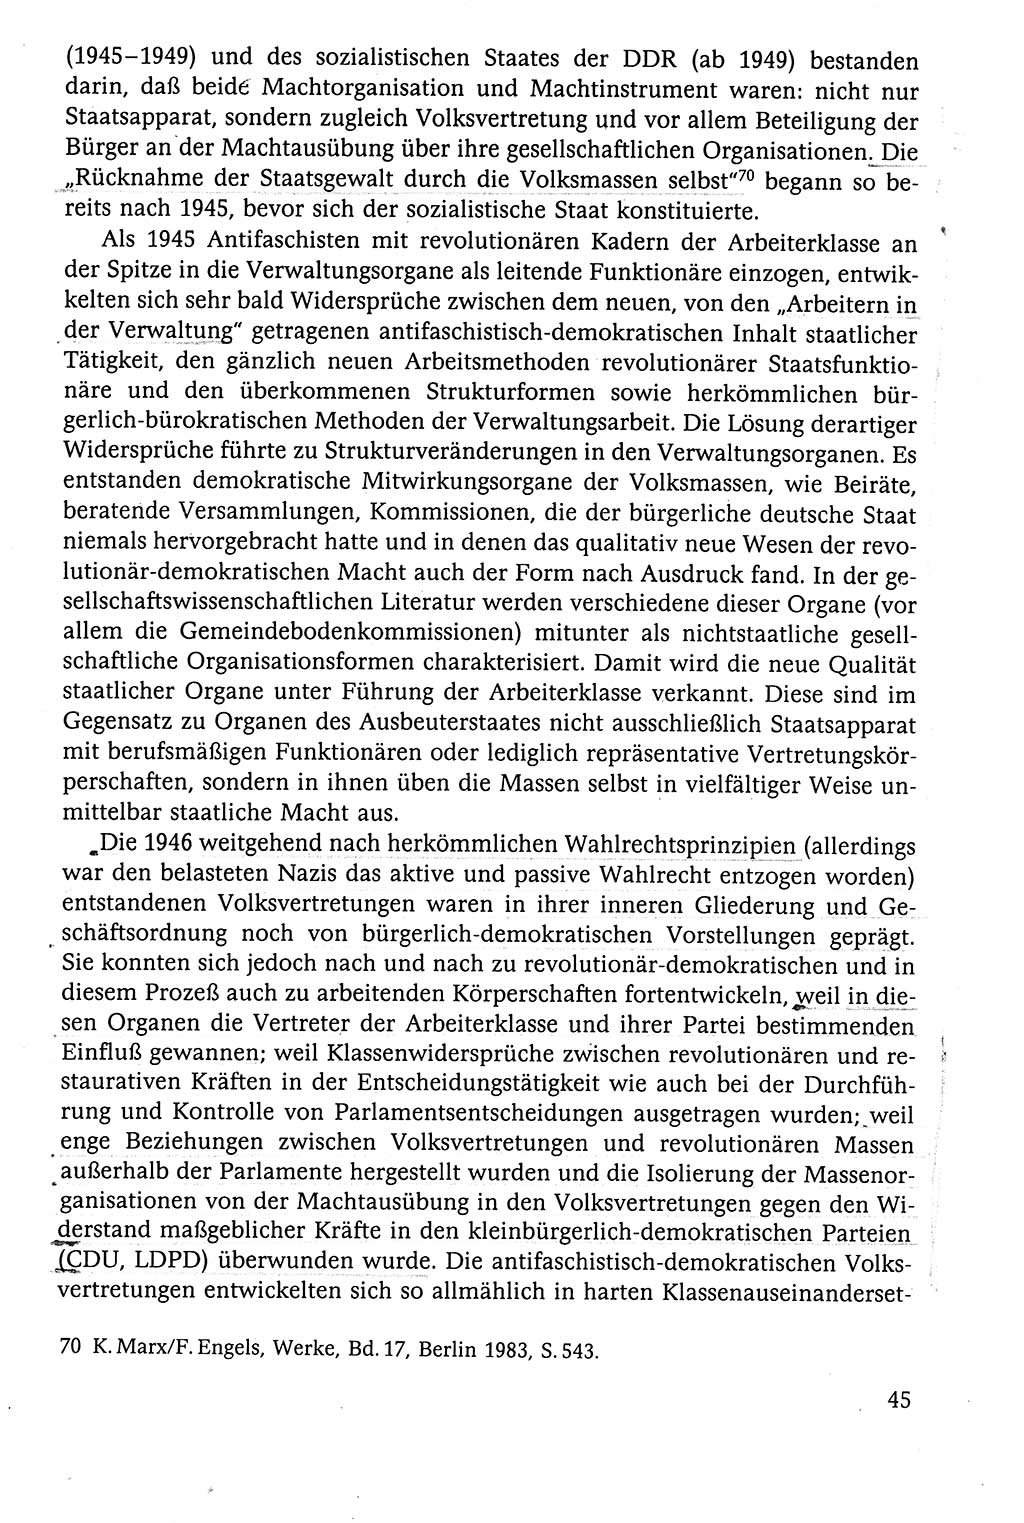 Der Staat im politischen System der DDR (Deutsche Demokratische Republik) 1986, Seite 45 (St. pol. Sys. DDR 1986, S. 45)